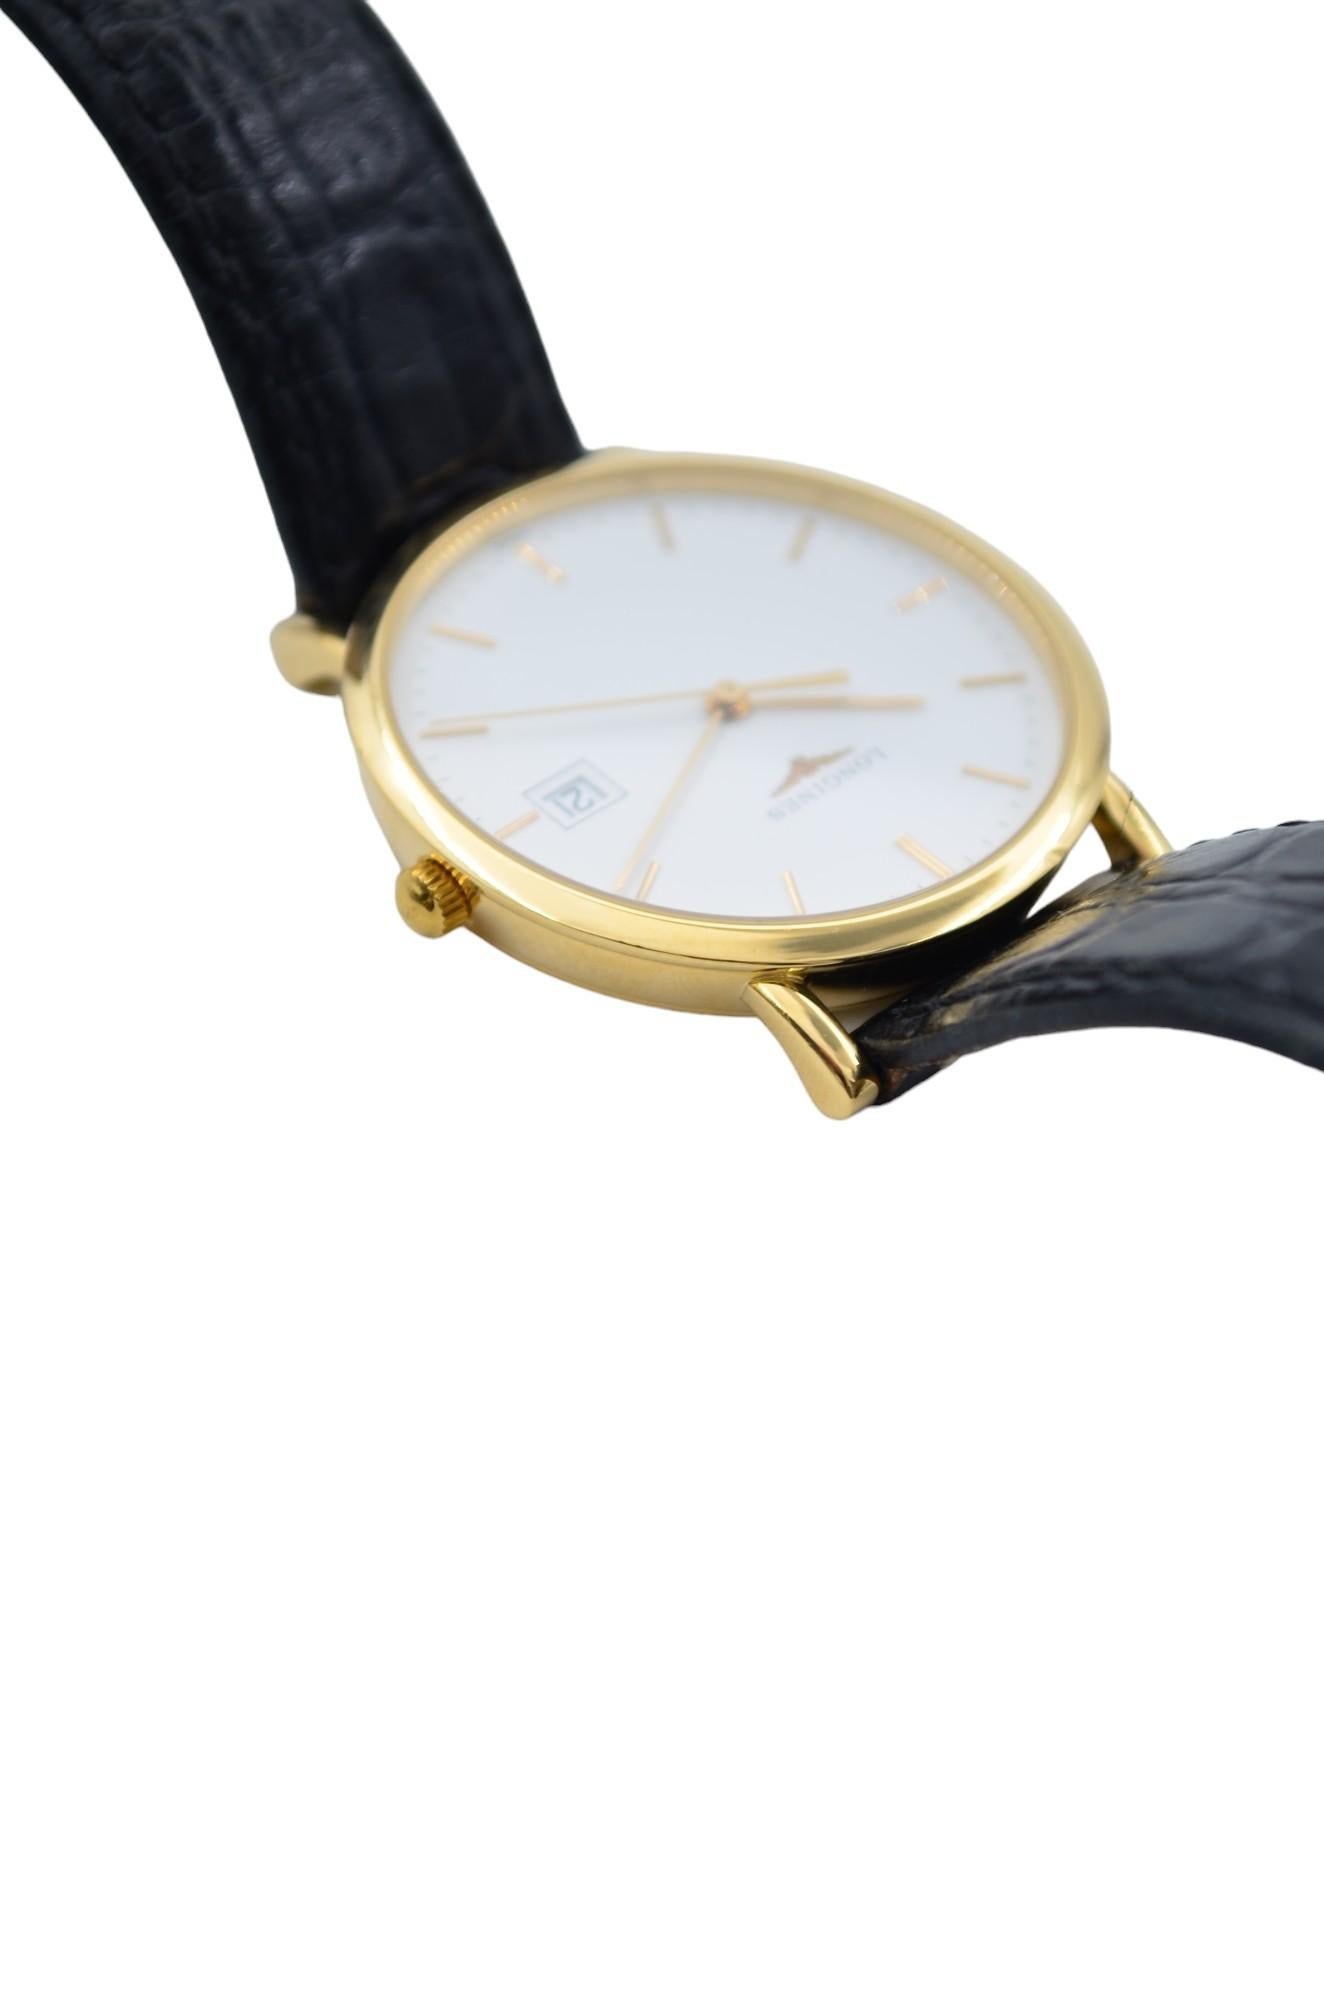 Longines Presence 34 White Dial Ladies' Watch Leather Strap Quartz L4.777.6.12.2 For Sale 8